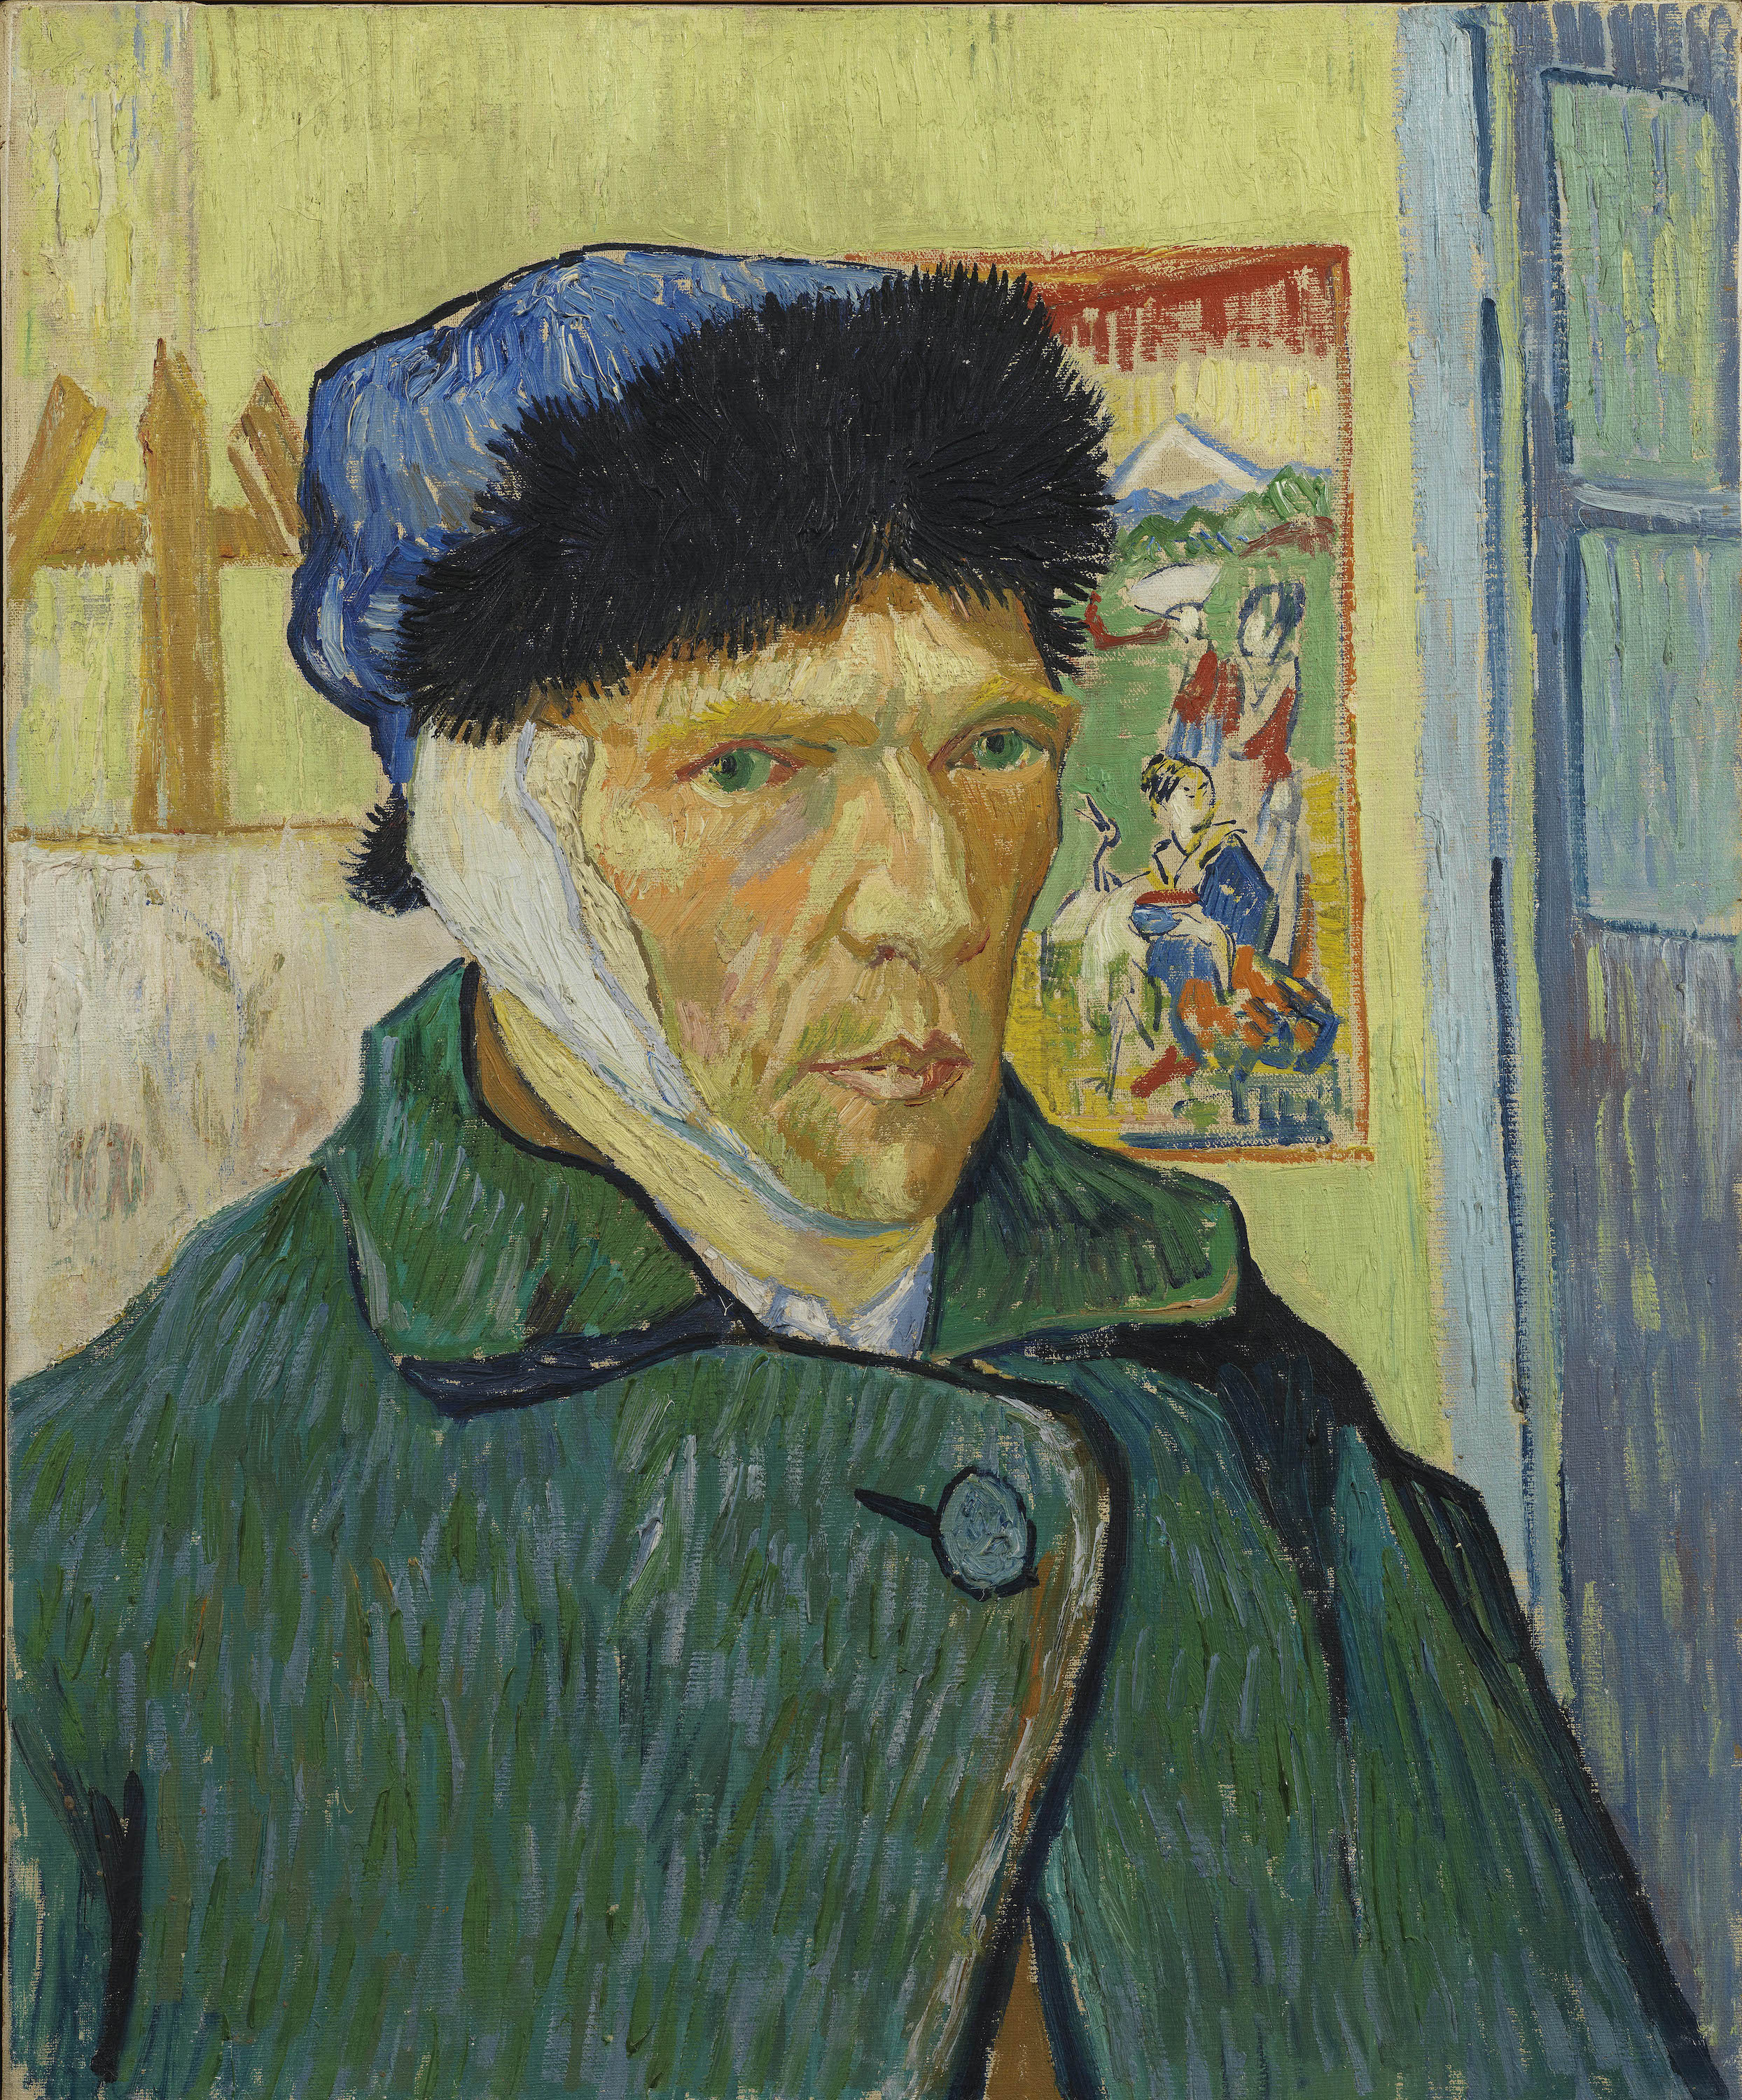 包紮耳朵的自畫像 by Vincent van Gogh - 1889 - 60 x 49 cm 